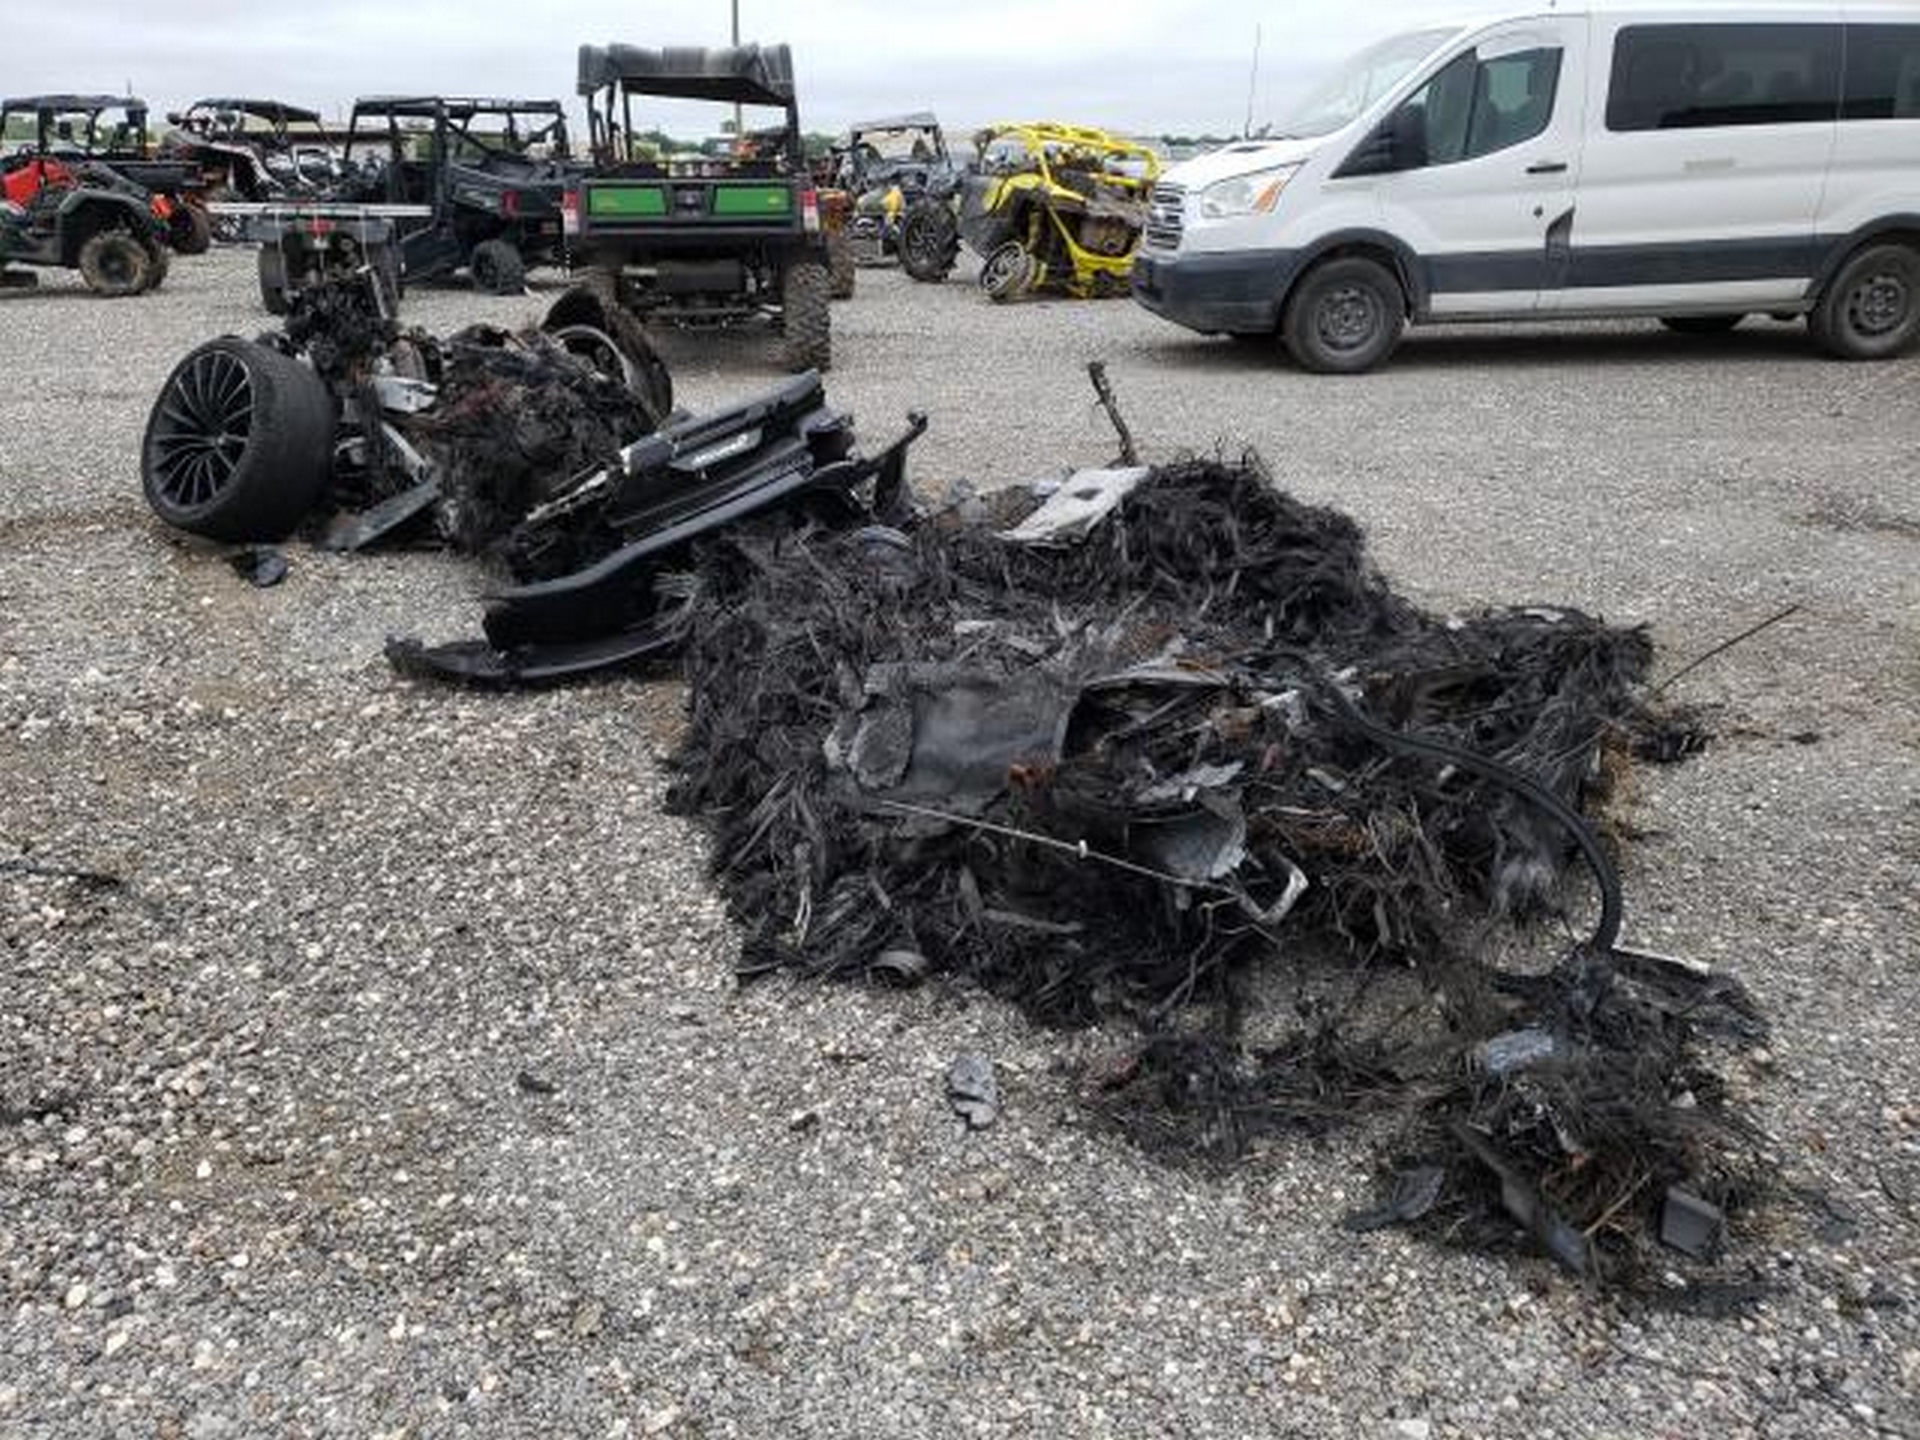 Siêu xe McLaren bị cháy thành tro vẫn được rao bán - 2